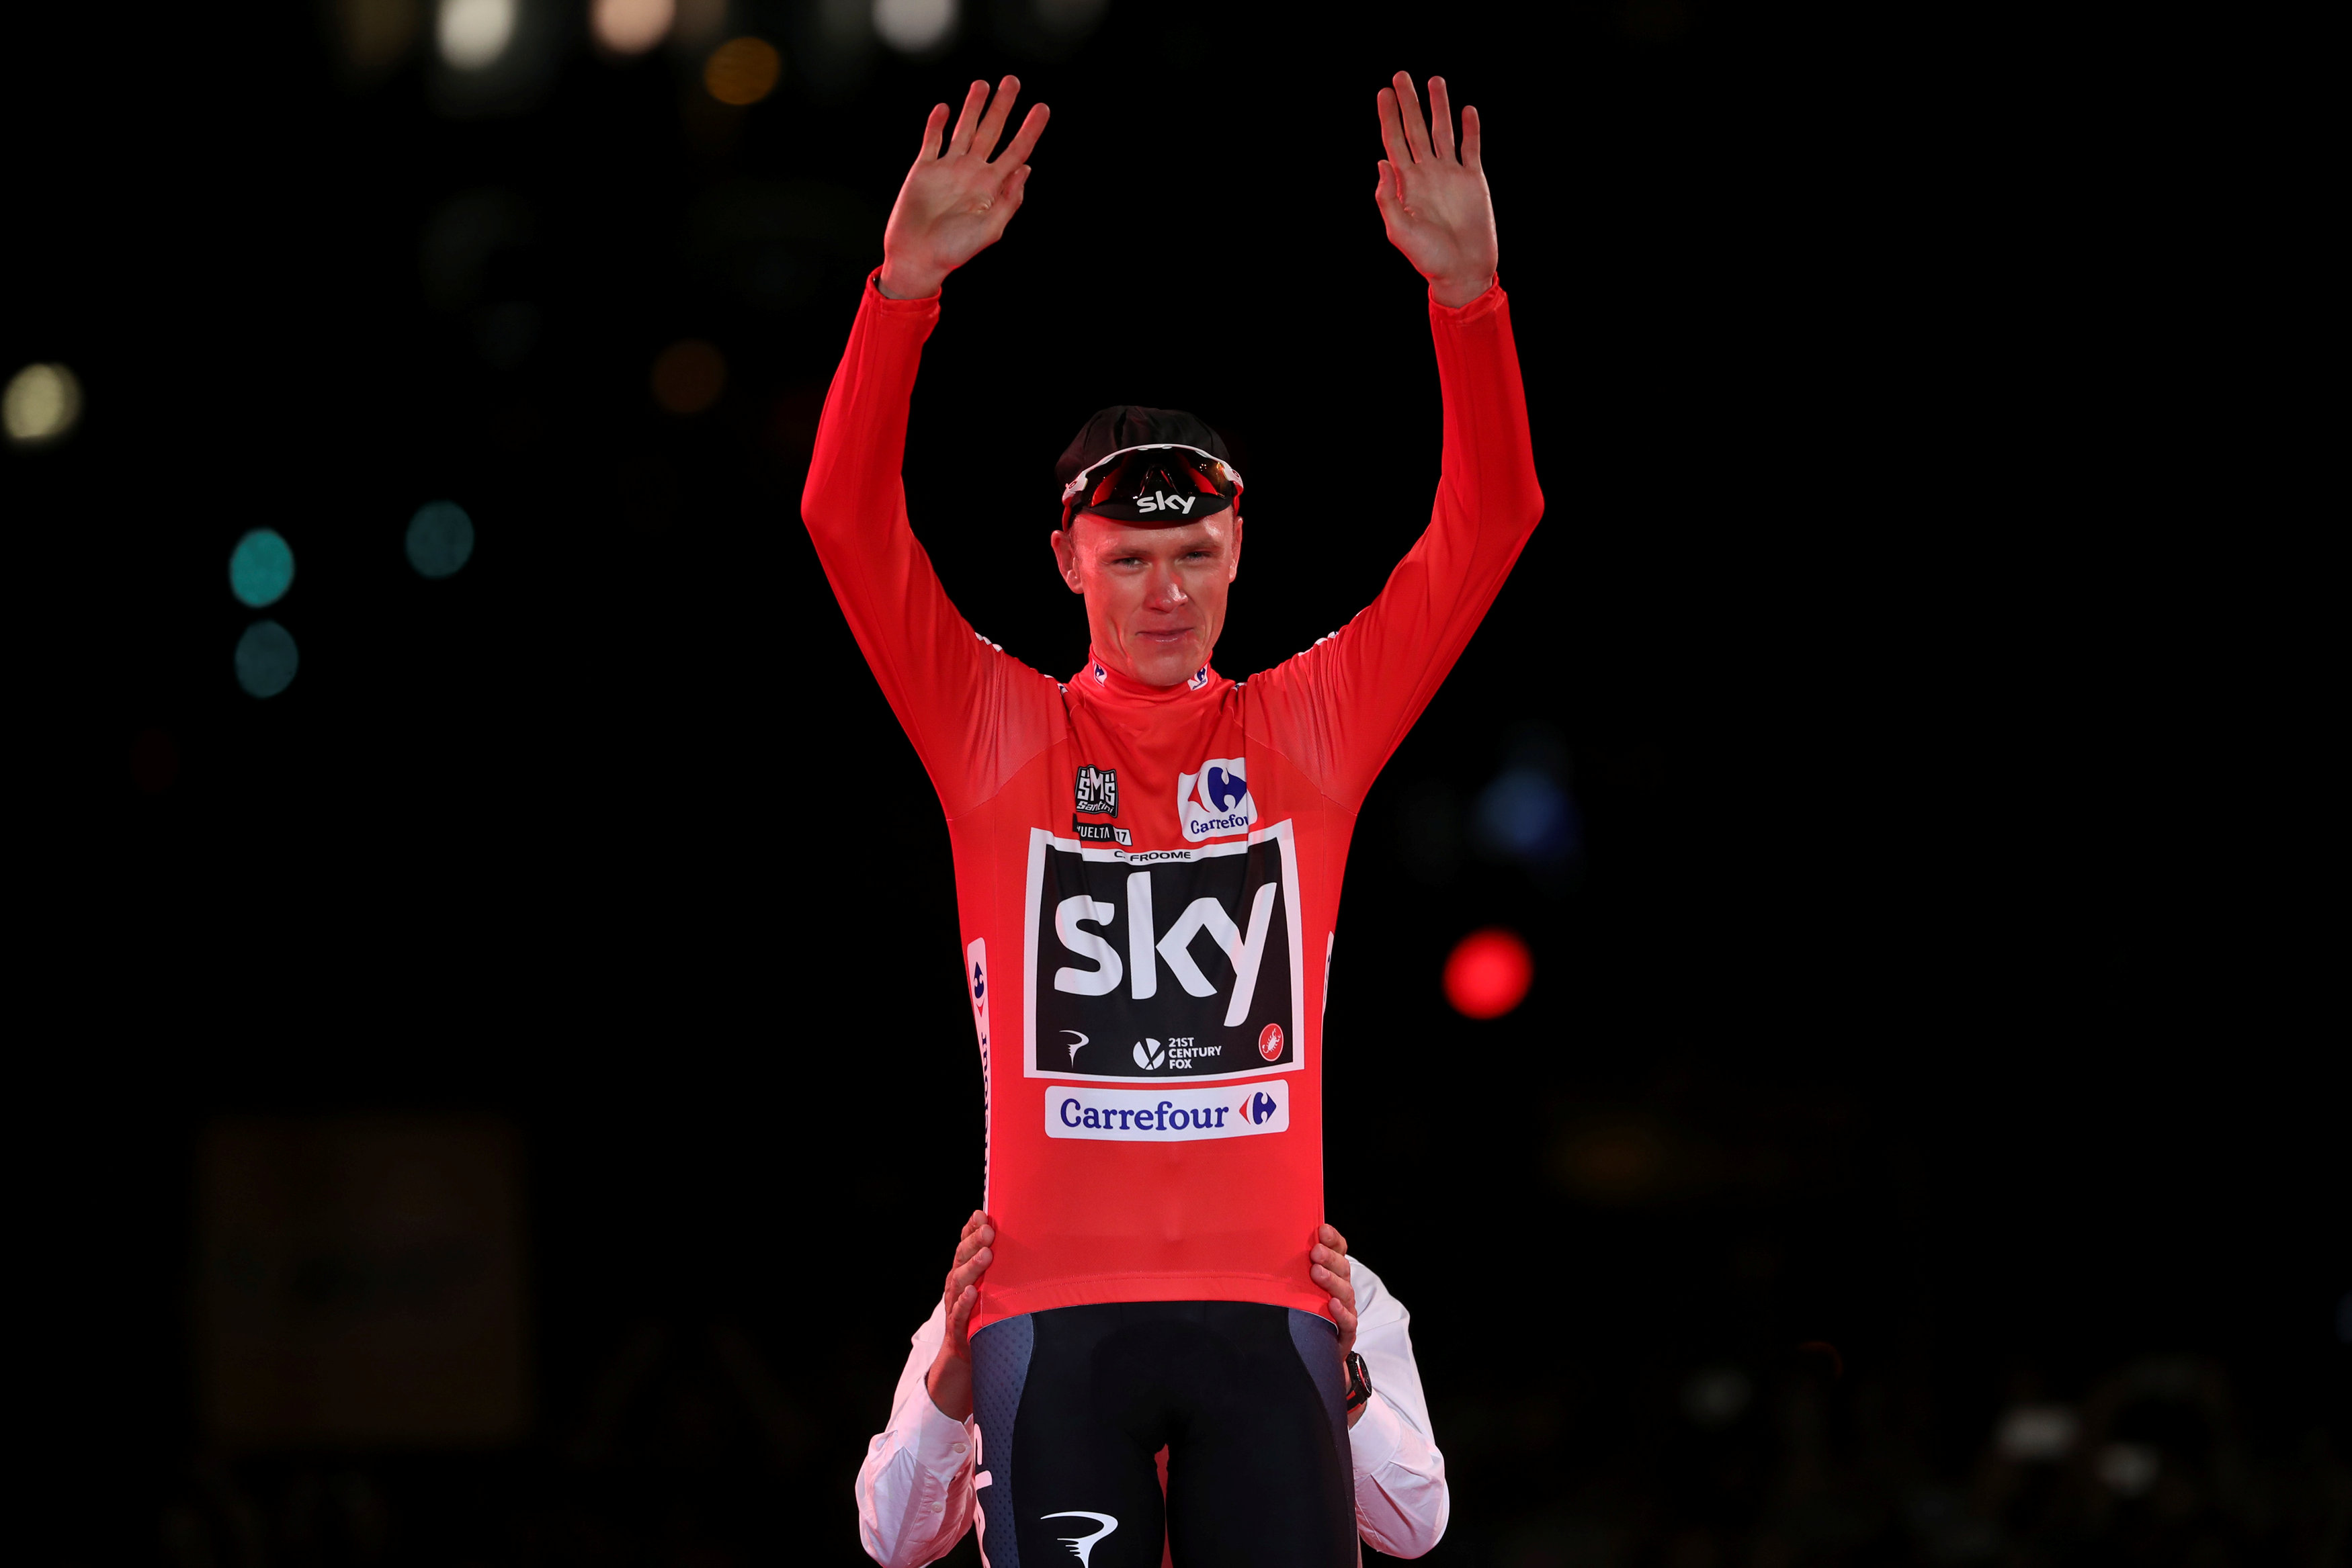 El británico Chris Froome gana la Vuelta a España 2017